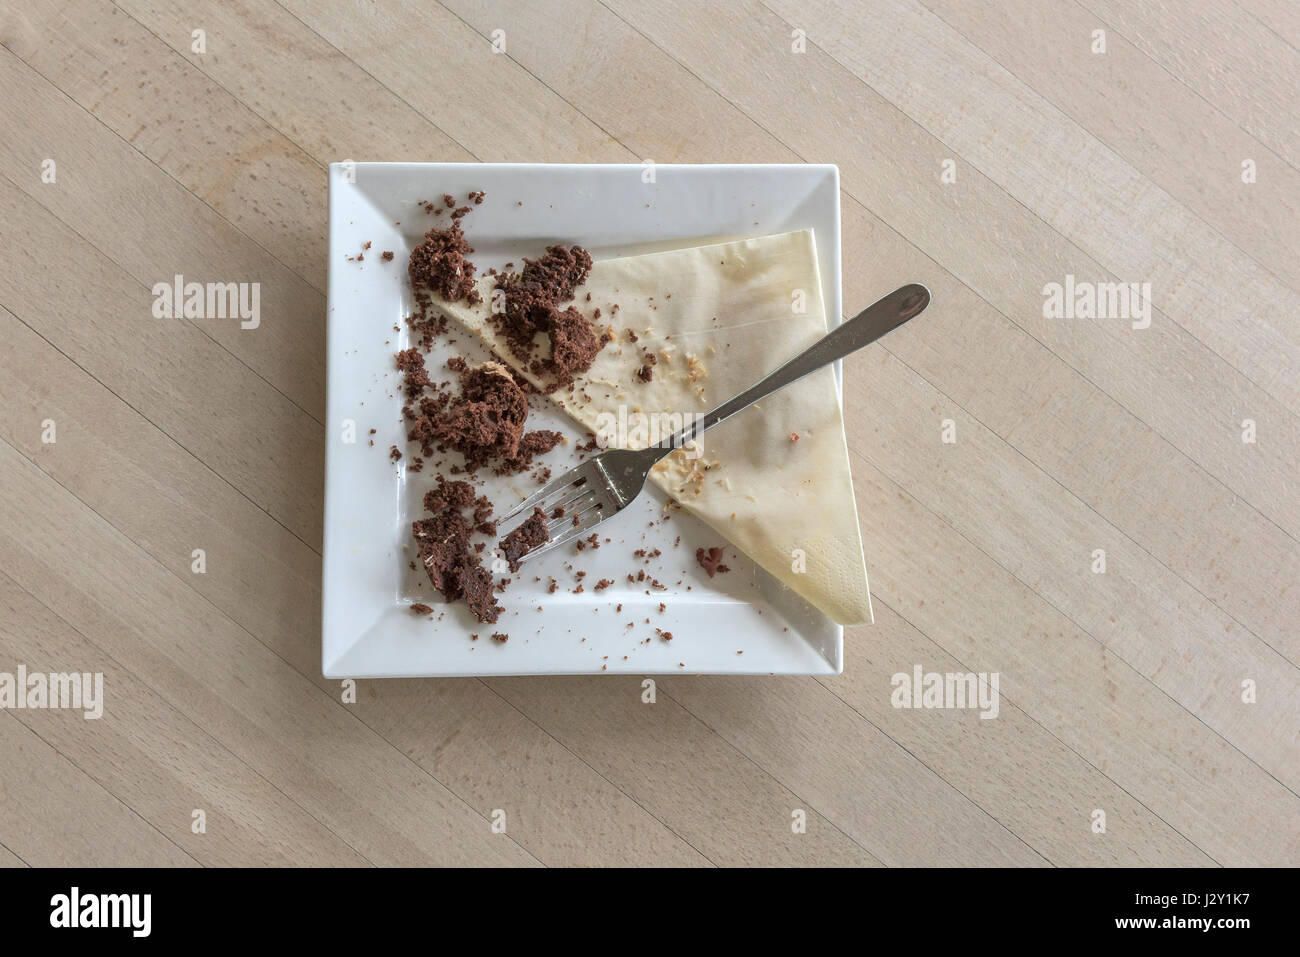 Speisereste ein Schokoladenkuchen Krümel Teller Gabel Besteck Serviette Serviette gegessen verbraucht zufrieden Zufriedenheit behandeln Genuss Stockfoto